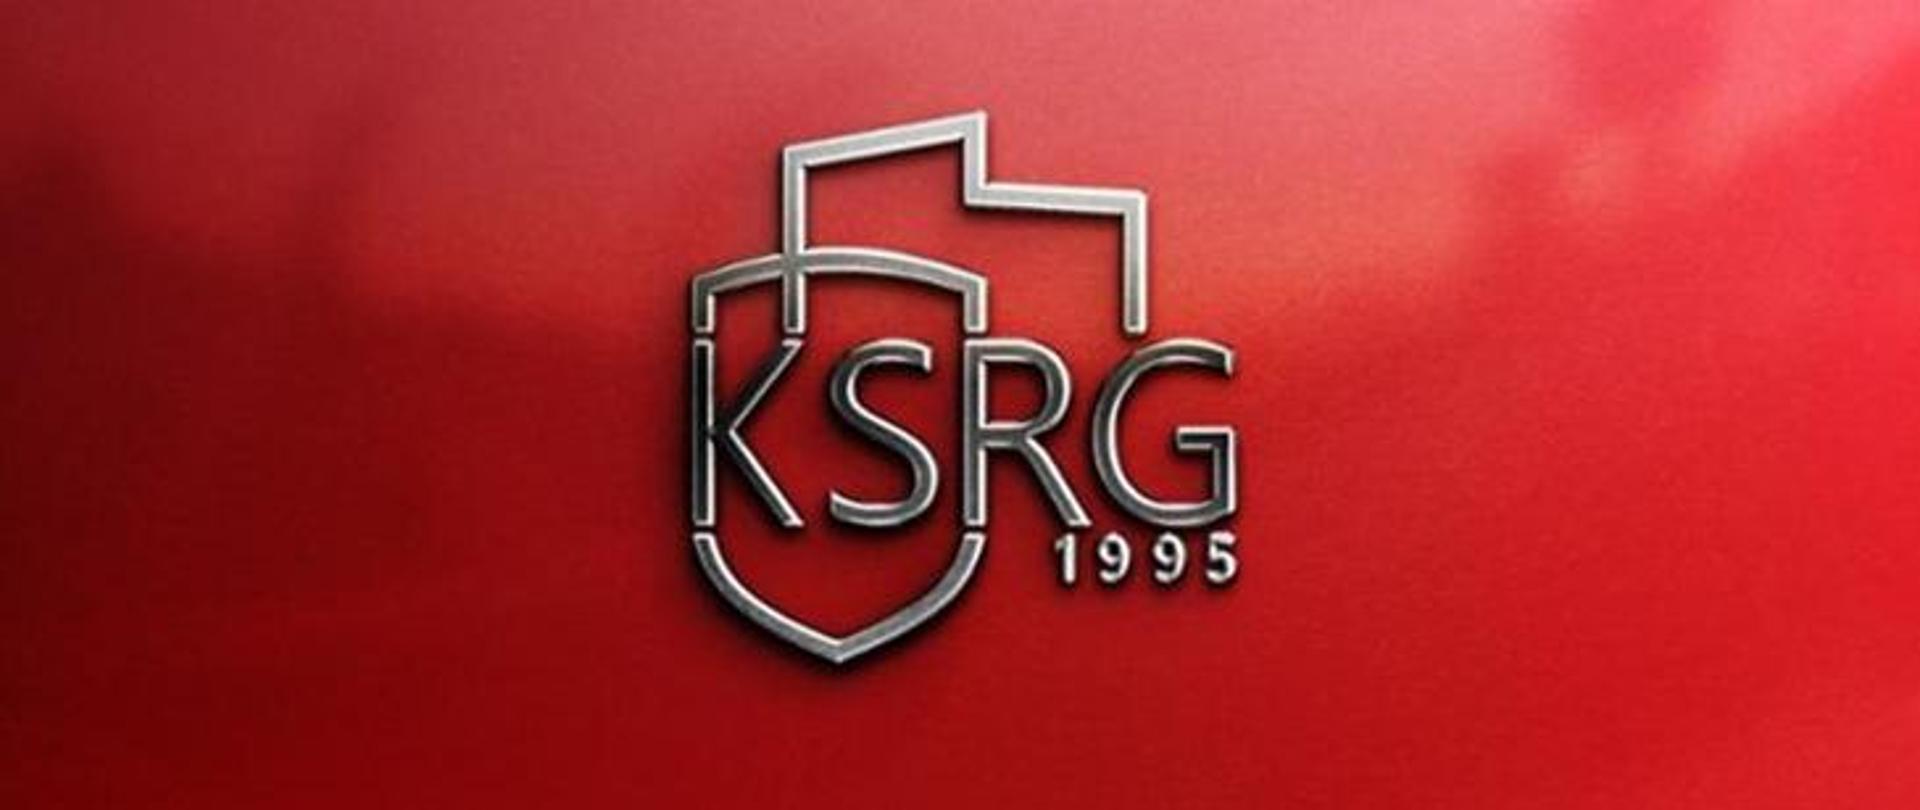 Zdjęcie przestawia logo KSRG